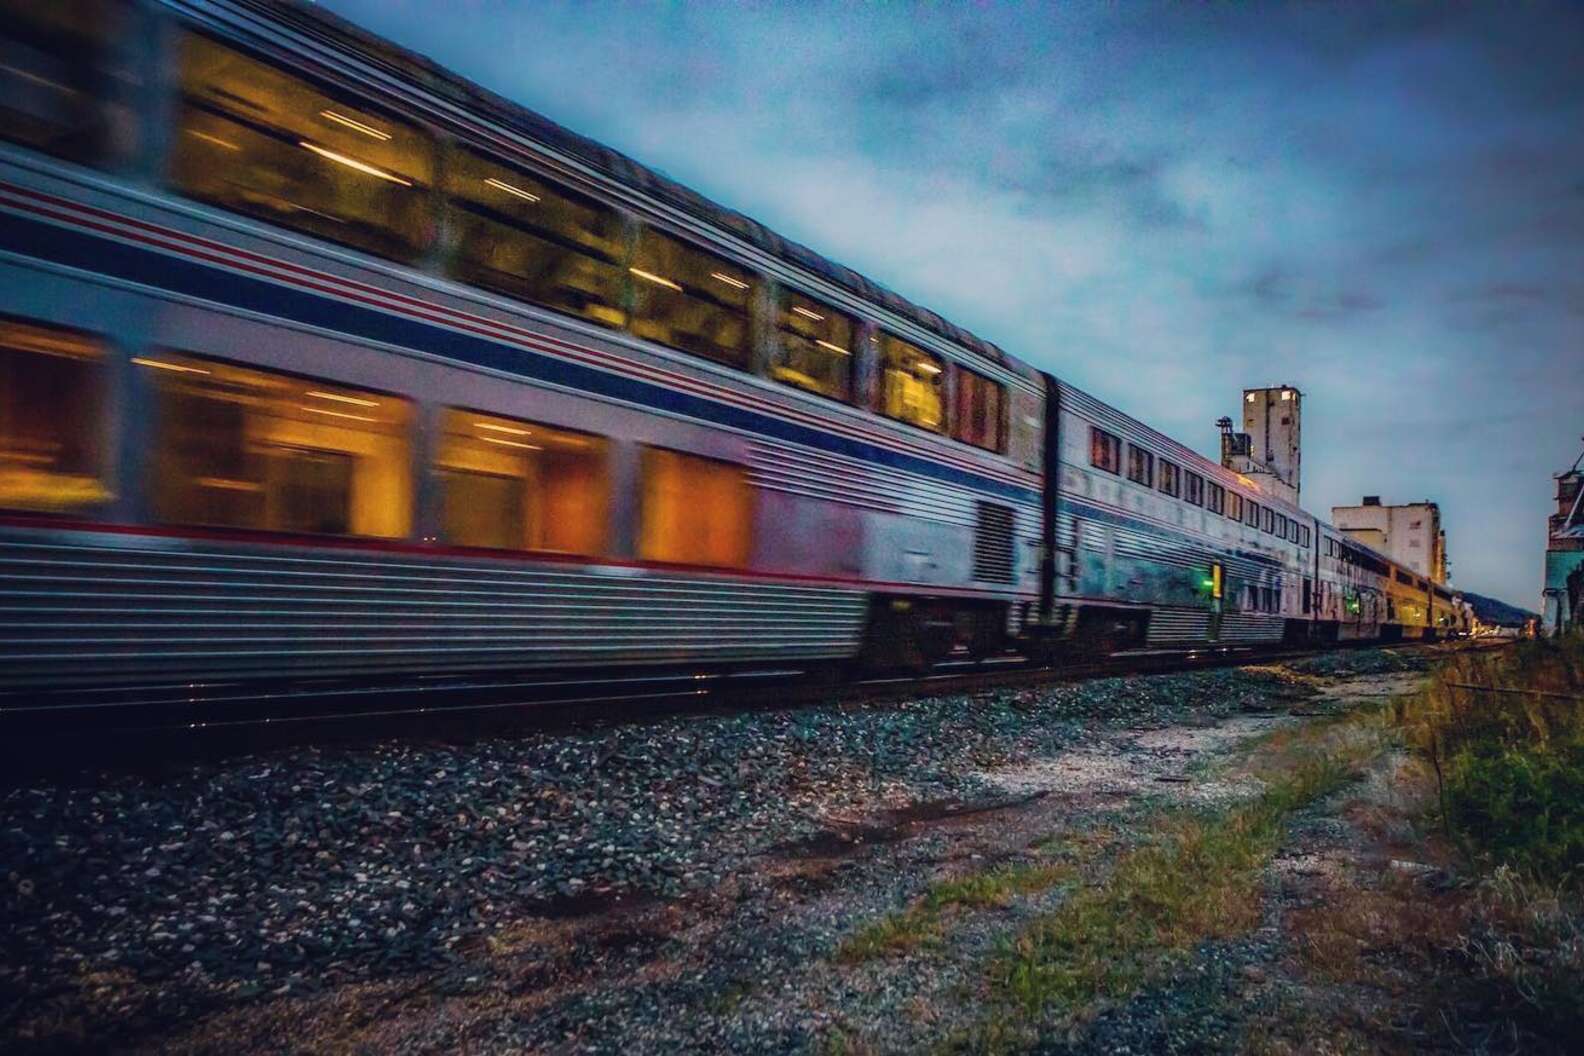 Photo courtesy of Amtrak